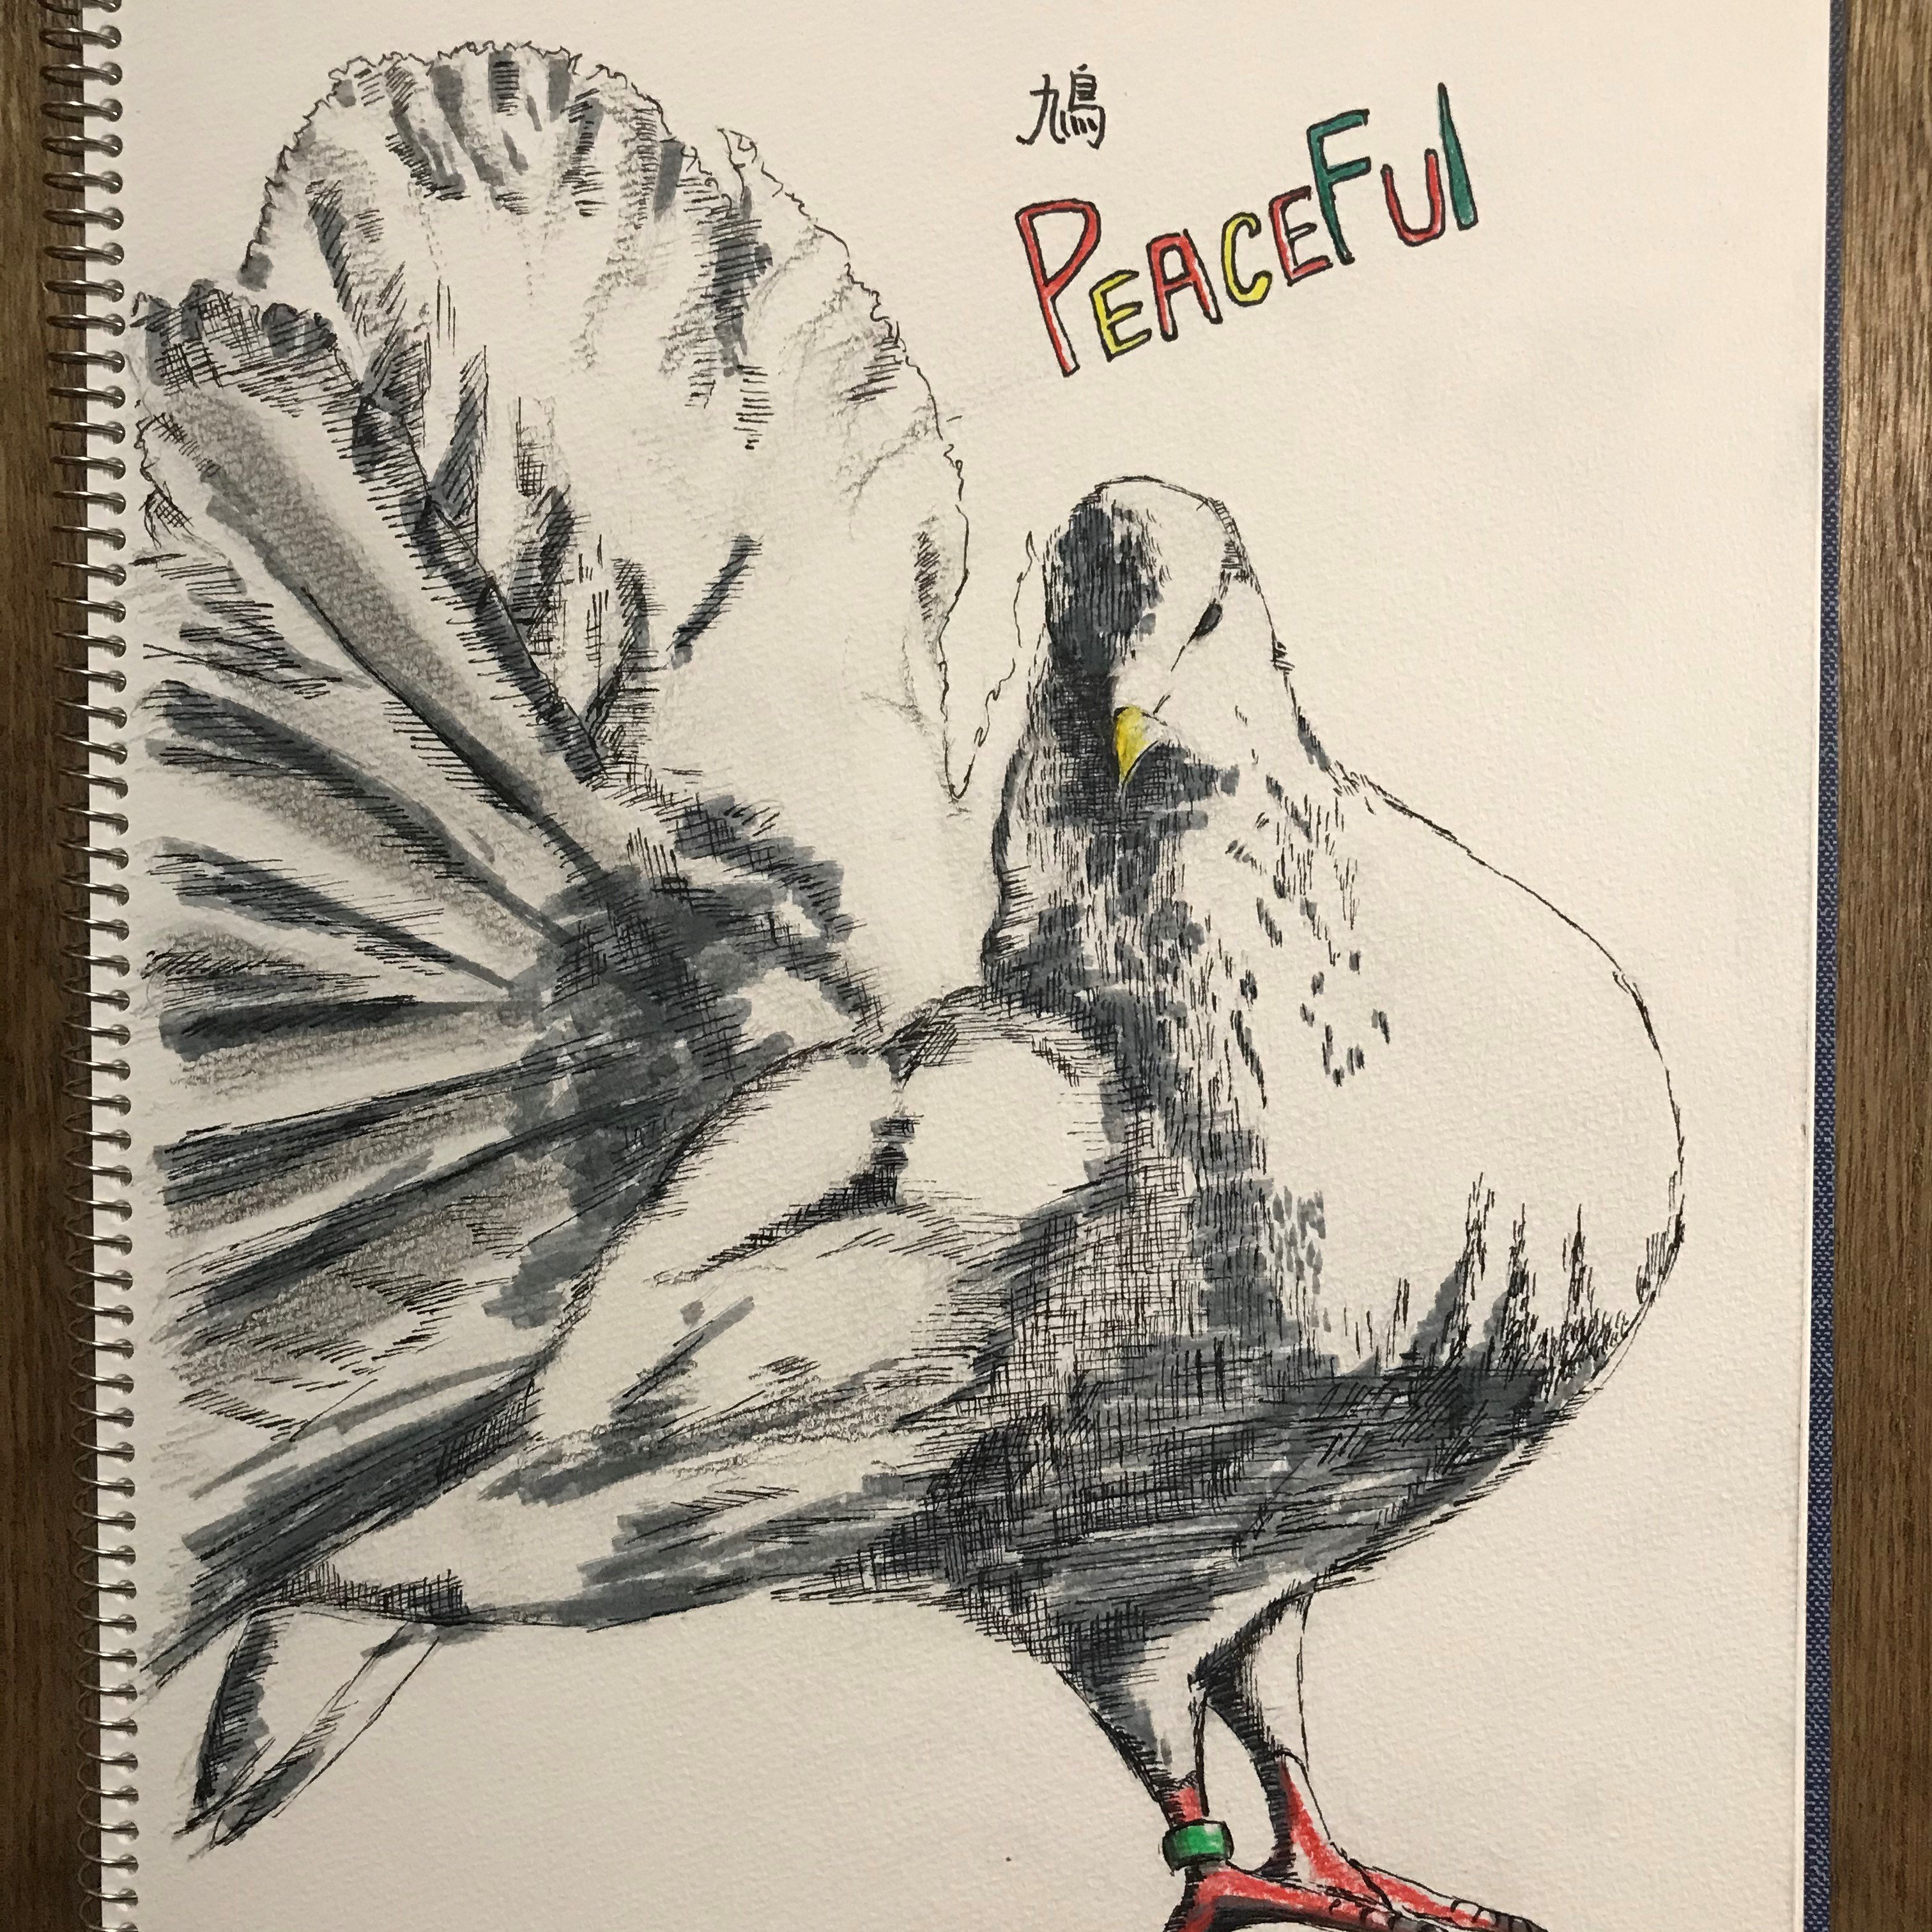 ちょーすけ 久々絵を描いた 鳩 平和の象徴 Peace Dove Pencil Pencildrawing Pencilart Brushpen Brushpenart Pen Penart 鉛筆画 筆ペン イラスト Art アート 絵描きの輪 絵描きさんと繋がりたい 平和 T Co Q0xl50lnwq Twitter